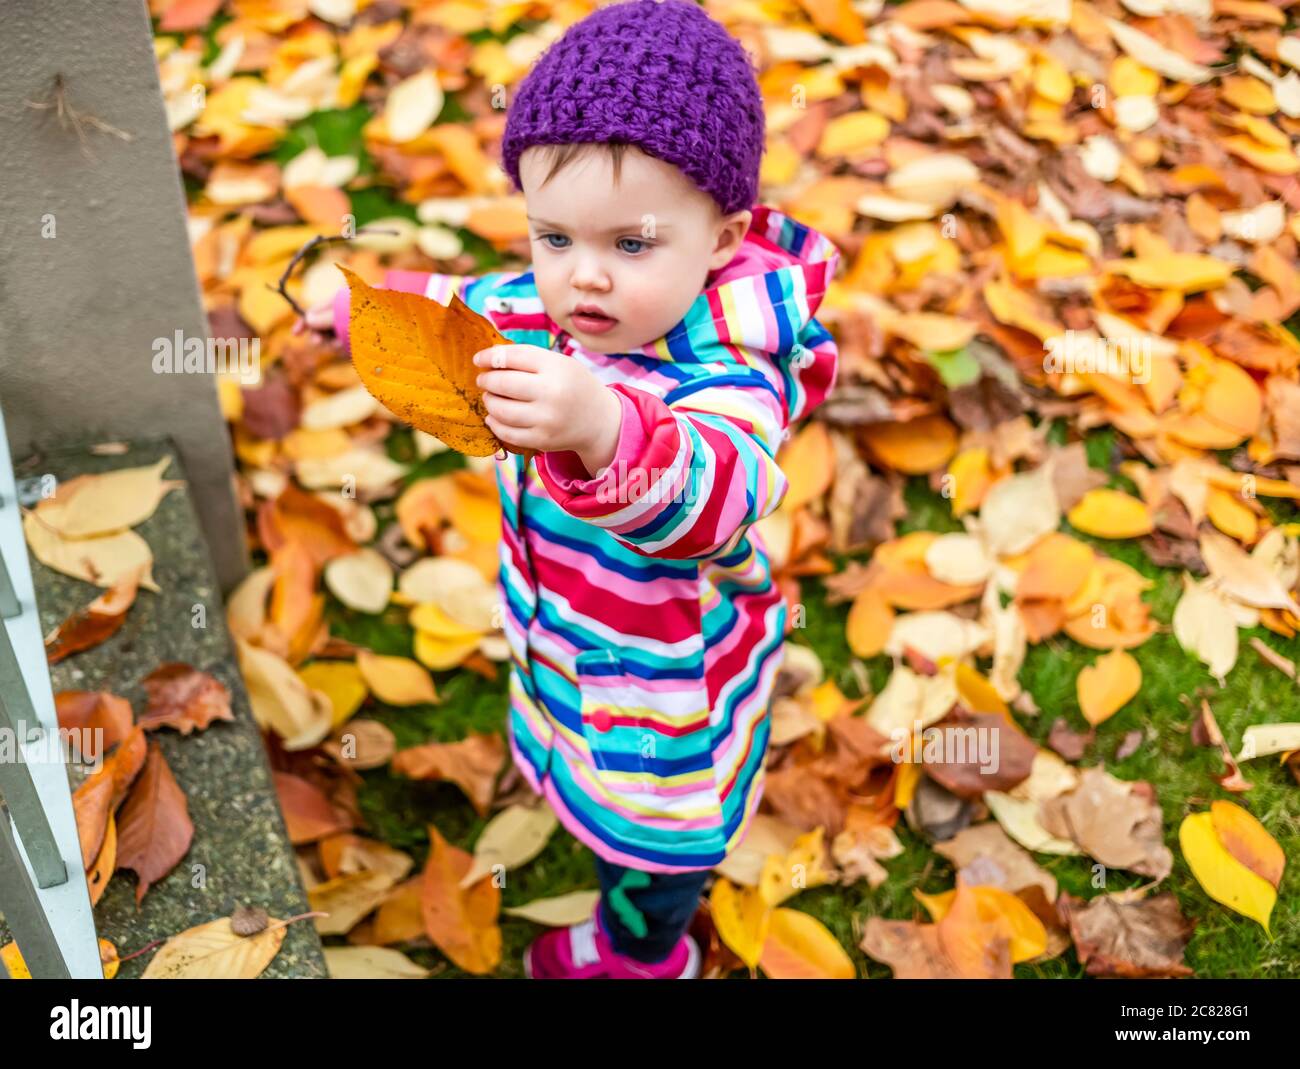 Ein Kleinkind, das draußen im Blattstreu auf dem Boden steht, ein herbstliches Blatt hält und anschaut; Surrey, British Columbia, Kanada Stockfoto